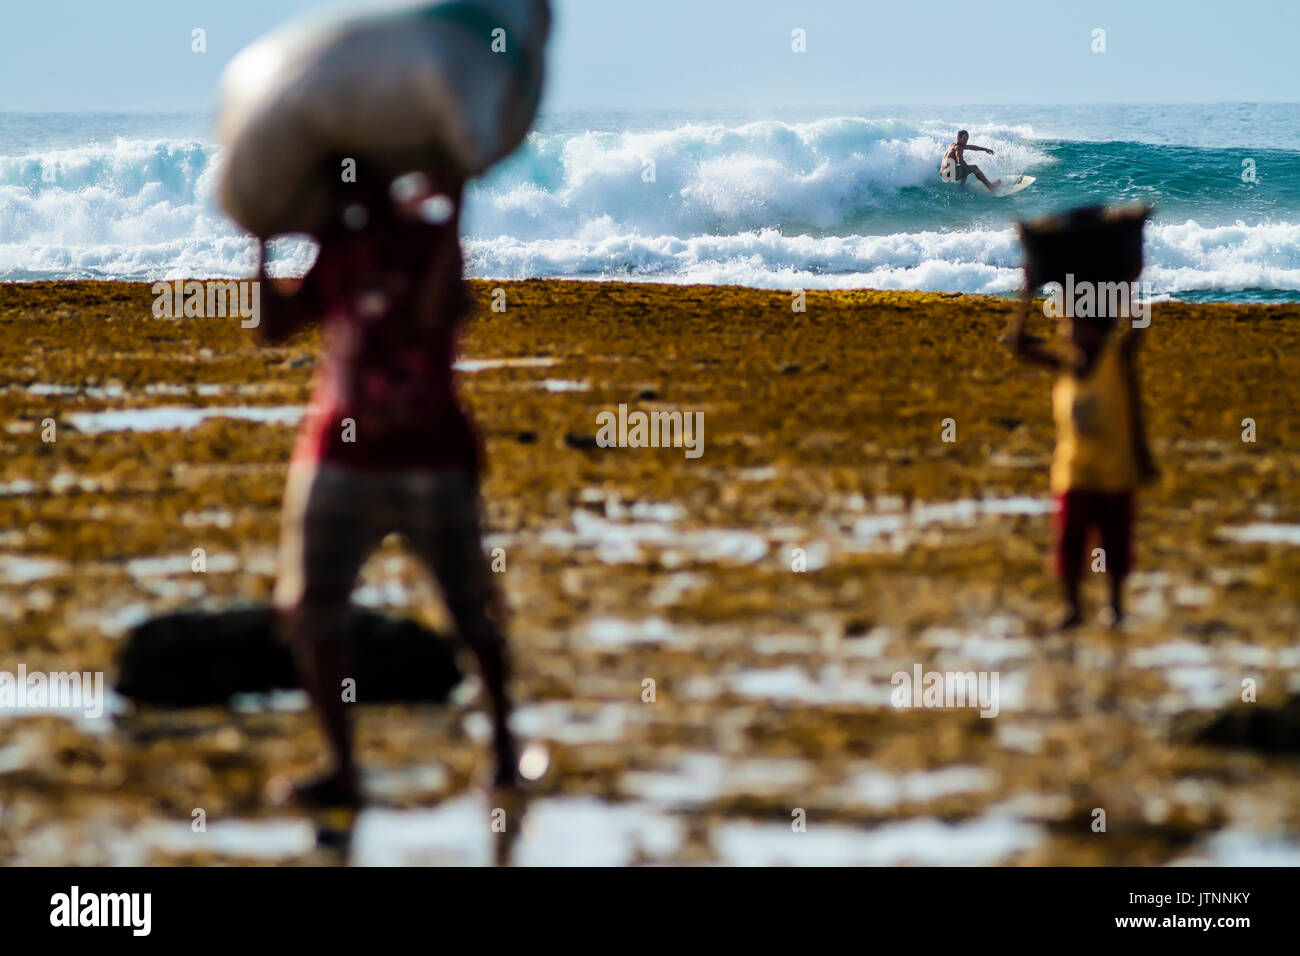 Surfer reiten Welle in den Hintergrund und die Menschen, die Säcke im Vordergrund, Lakey Peak, zentrale Sumbawa, Indonesien Stockfoto